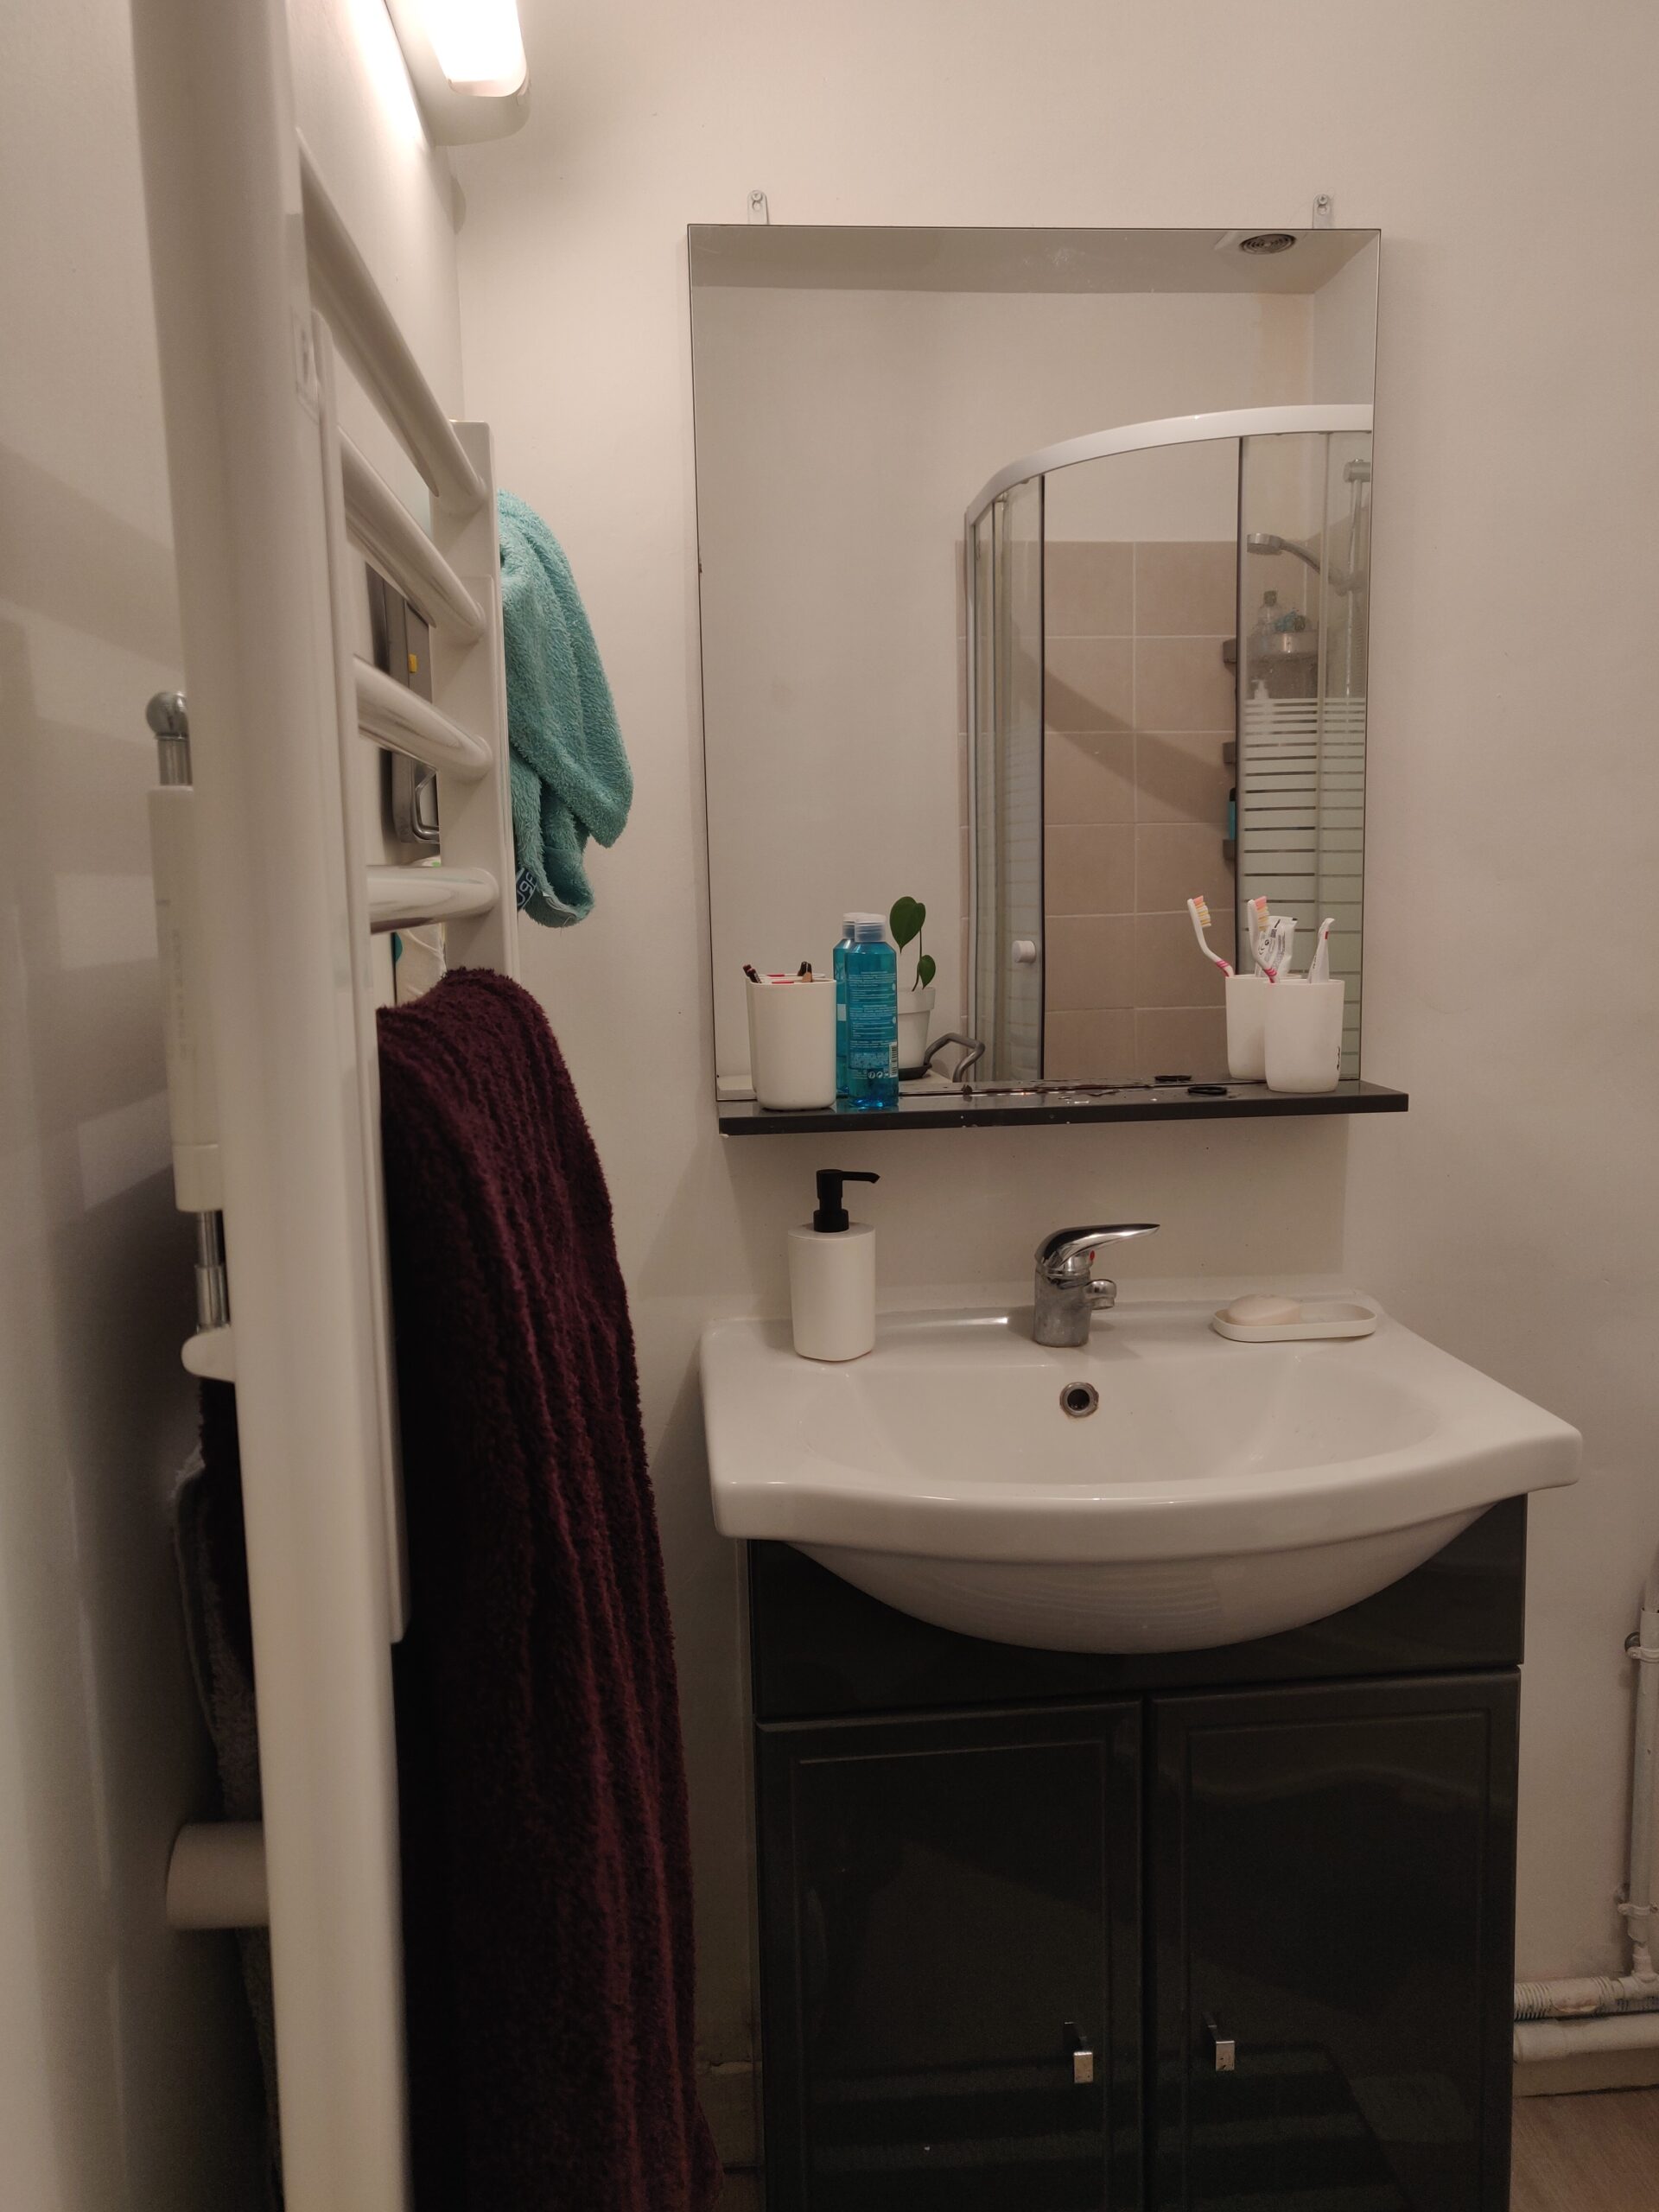 Vue sur une salle de bain. A gauche de la photo il y a un sèche serviette sur lequel se trouvent une serviette violette et bleue. Sur l'autre partie de la photo se trouvent un miroir, dans lequel se reflète la douche. En dessous de celui-ci se trouve un évier blanc, sur lequel est posé une bouteille de savon, blanche. En dessous ce trouve un meuble noir.